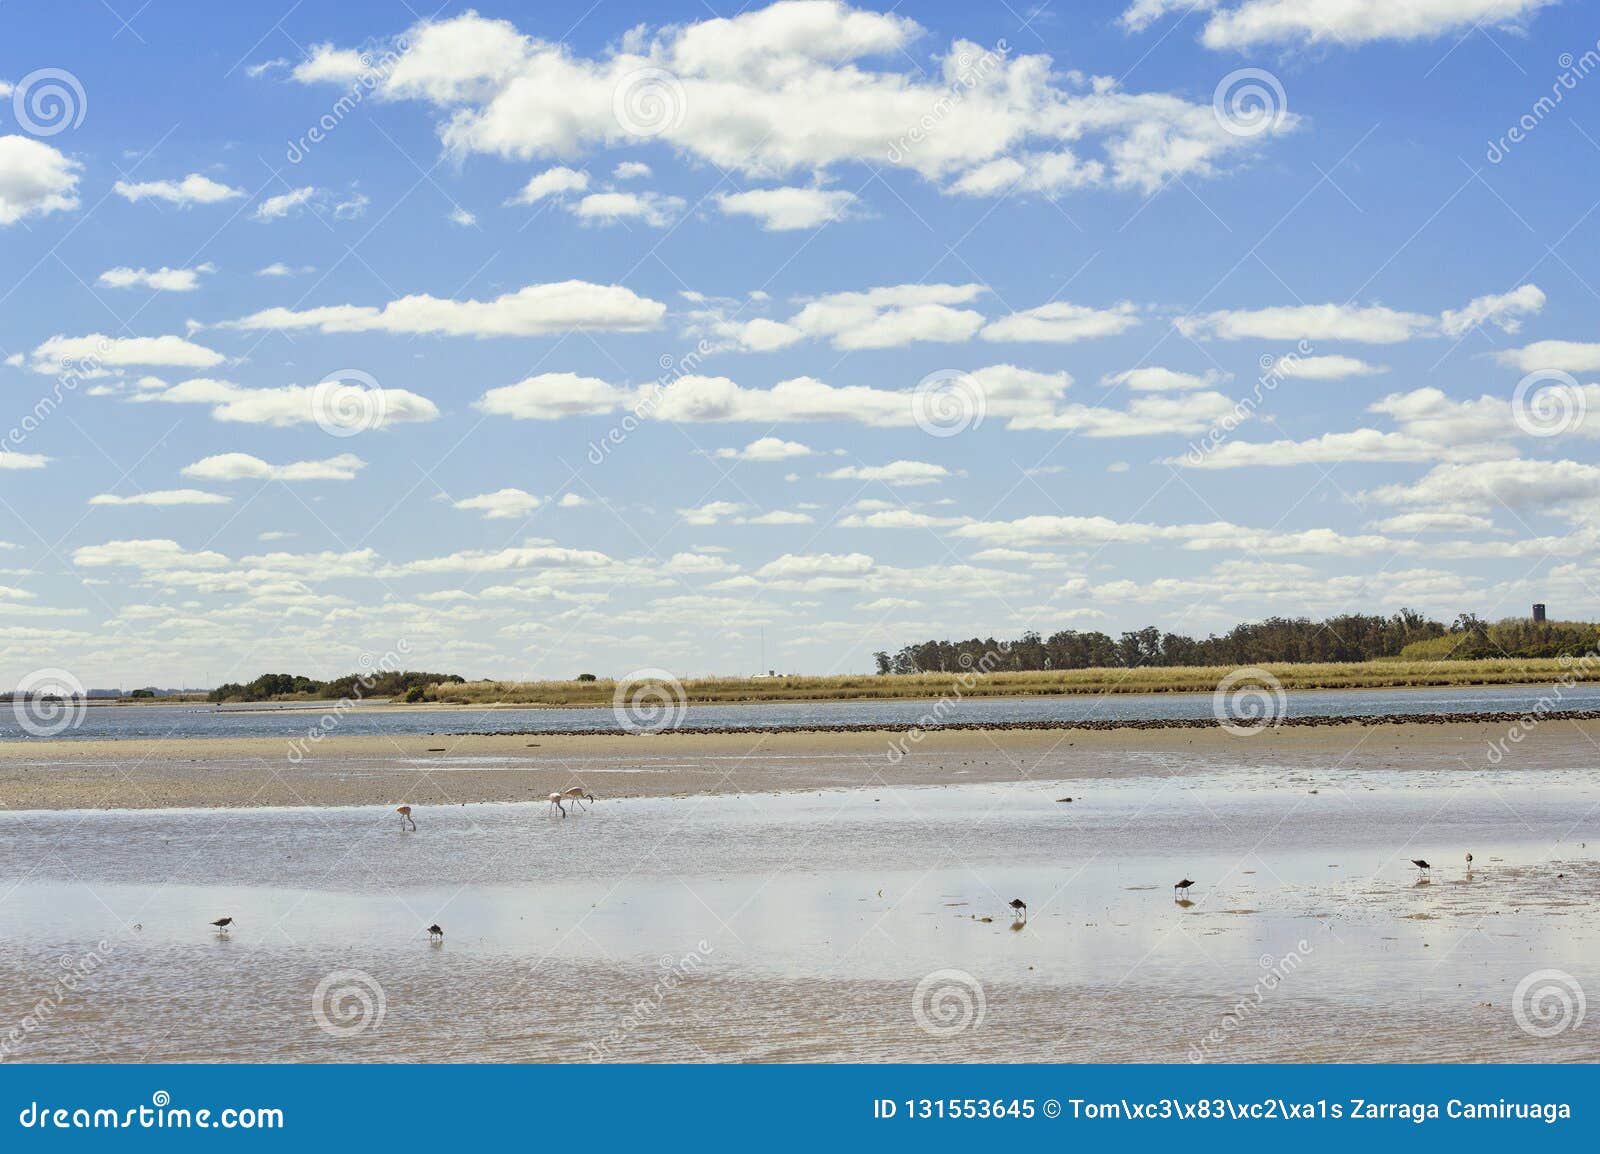 landscape aquatic birds in mar chiquita lagoon